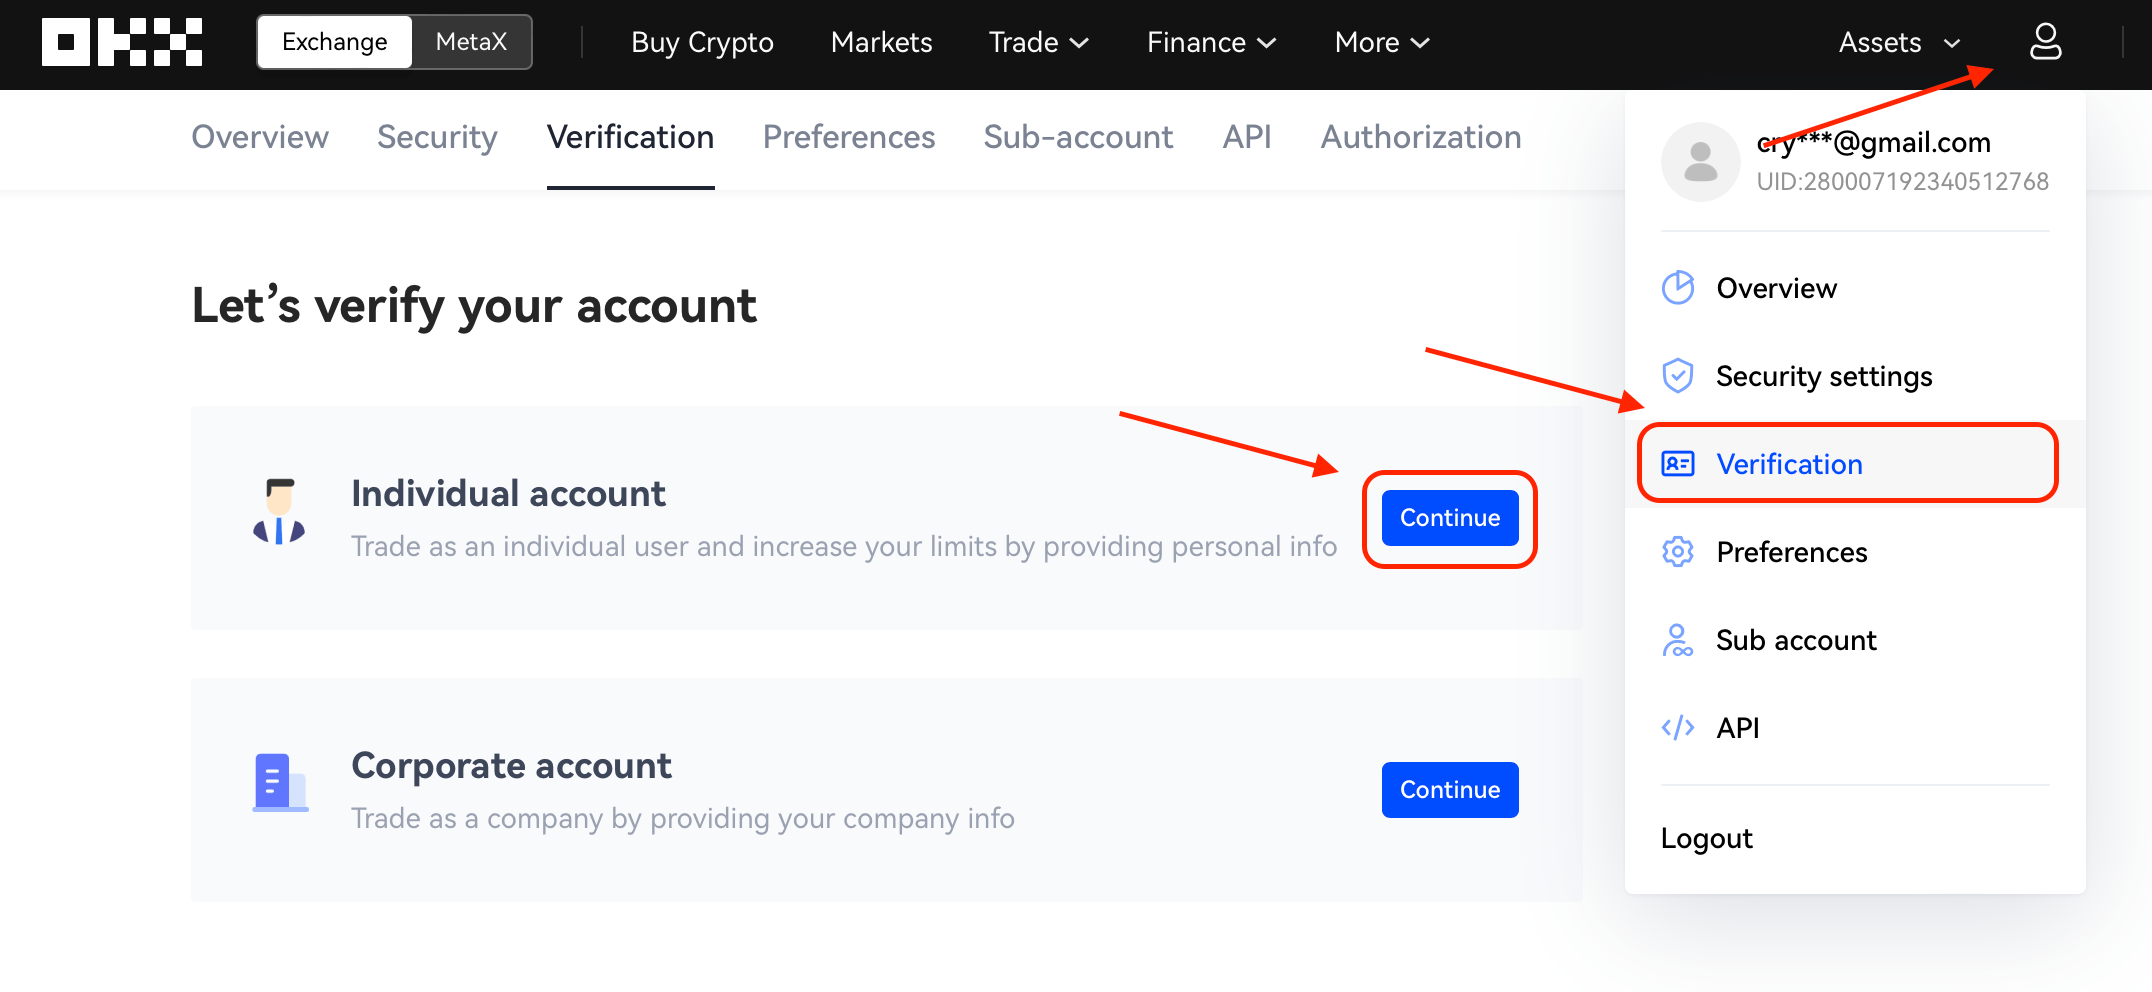 Account verification on the OKX exchange